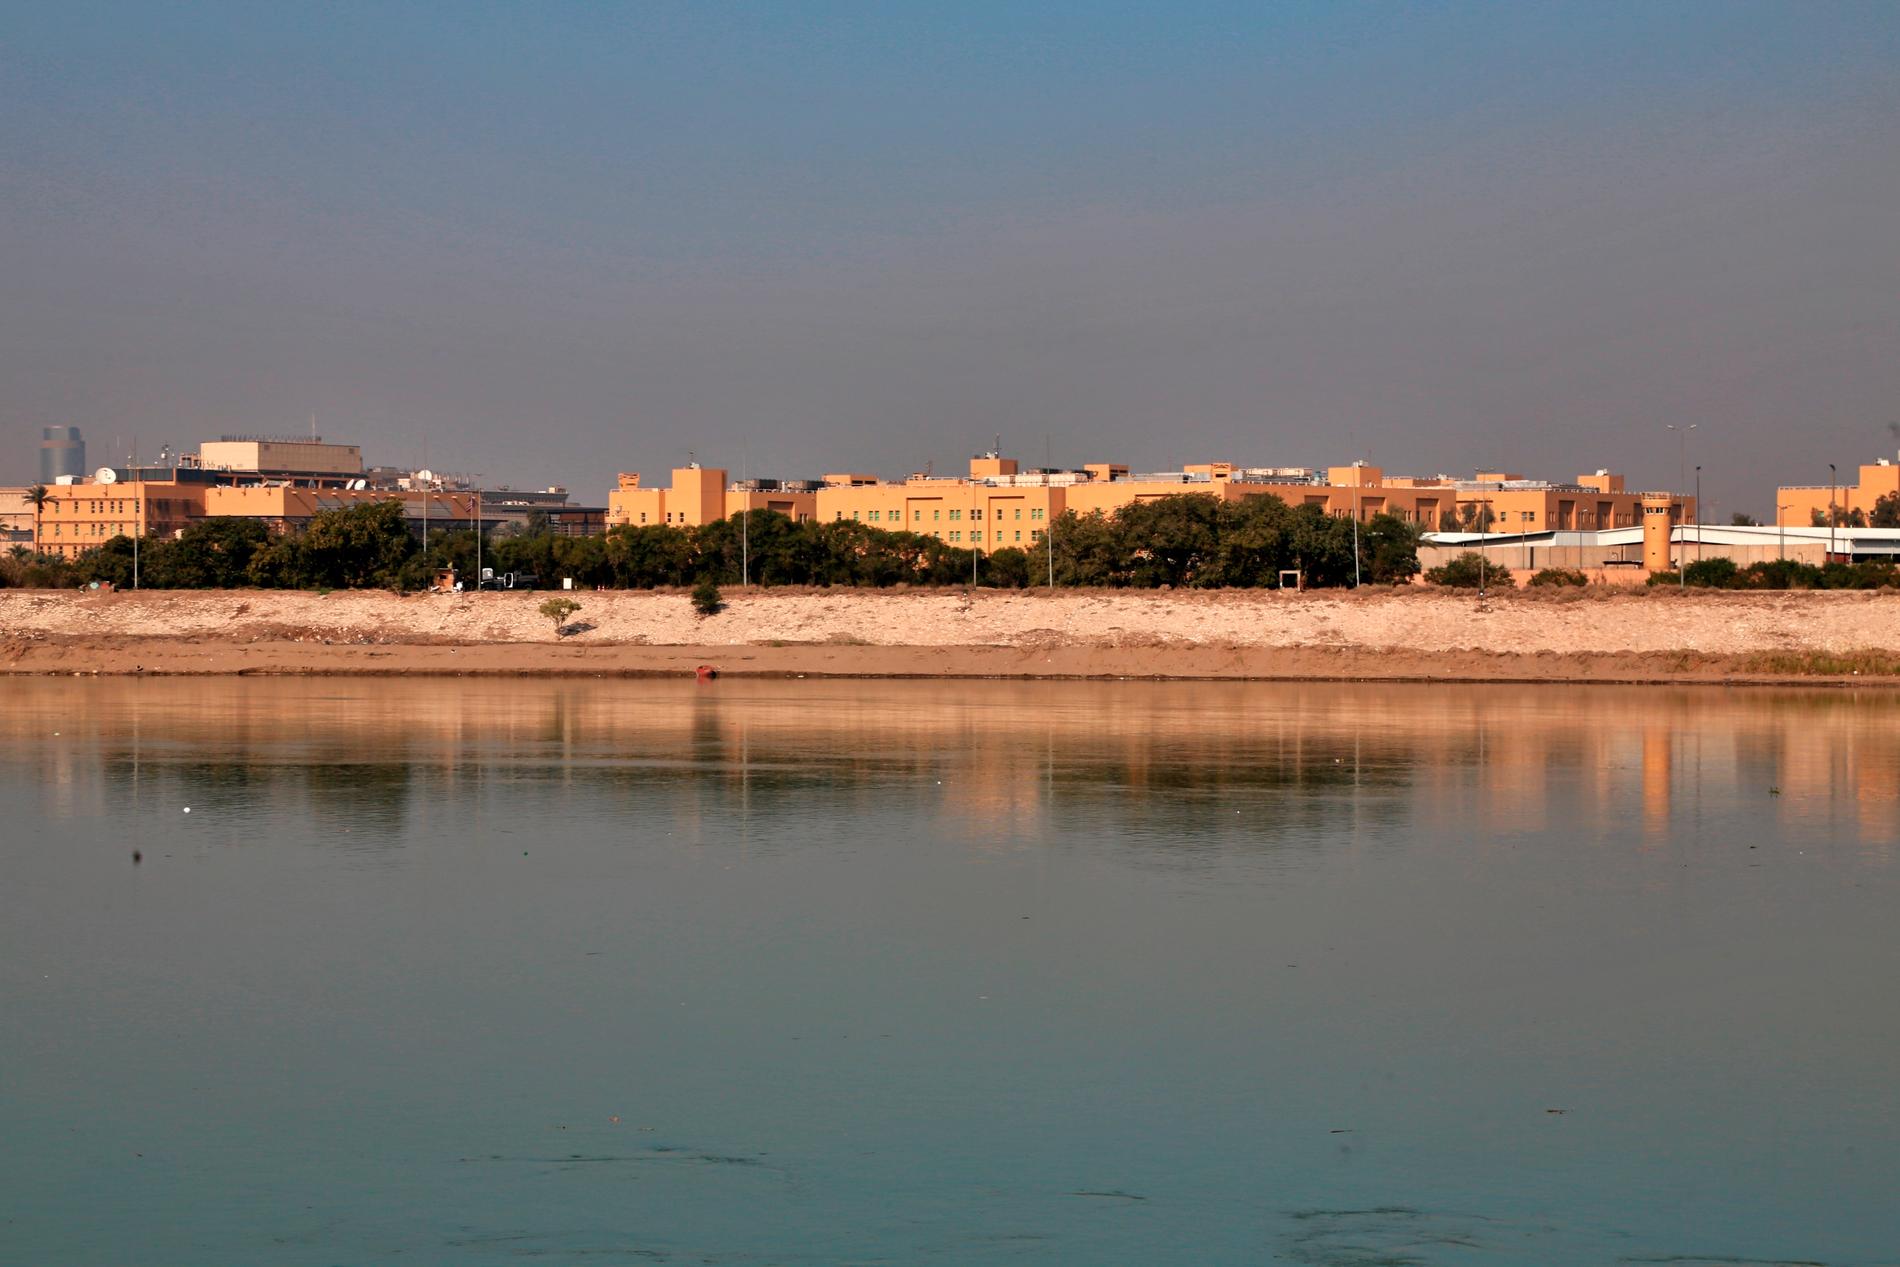 USA:s ambassad sedd från andra sidan av floden Tigris. Arkivbild.